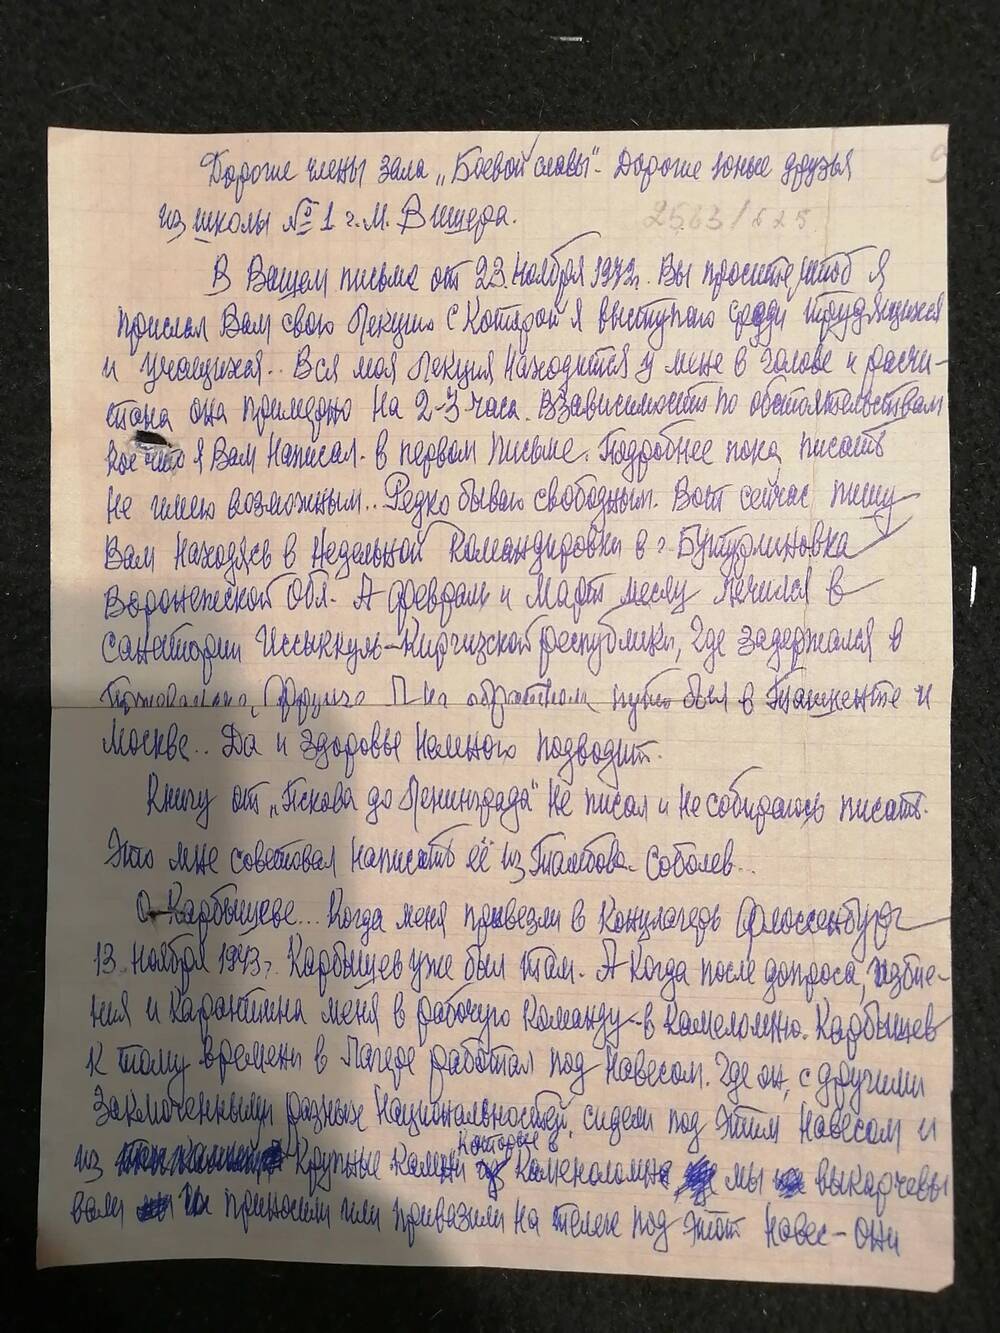 Письмо от Хорина. Адресовано членам зала Боевой Славы. В письме автор рассказывает о Карбышеве и нахождении с ним в немецком концлагере. В письме дата: «19.04.1973 г.» Письмо написано синей пастой с двух сторон тетрадного листа в клетку.